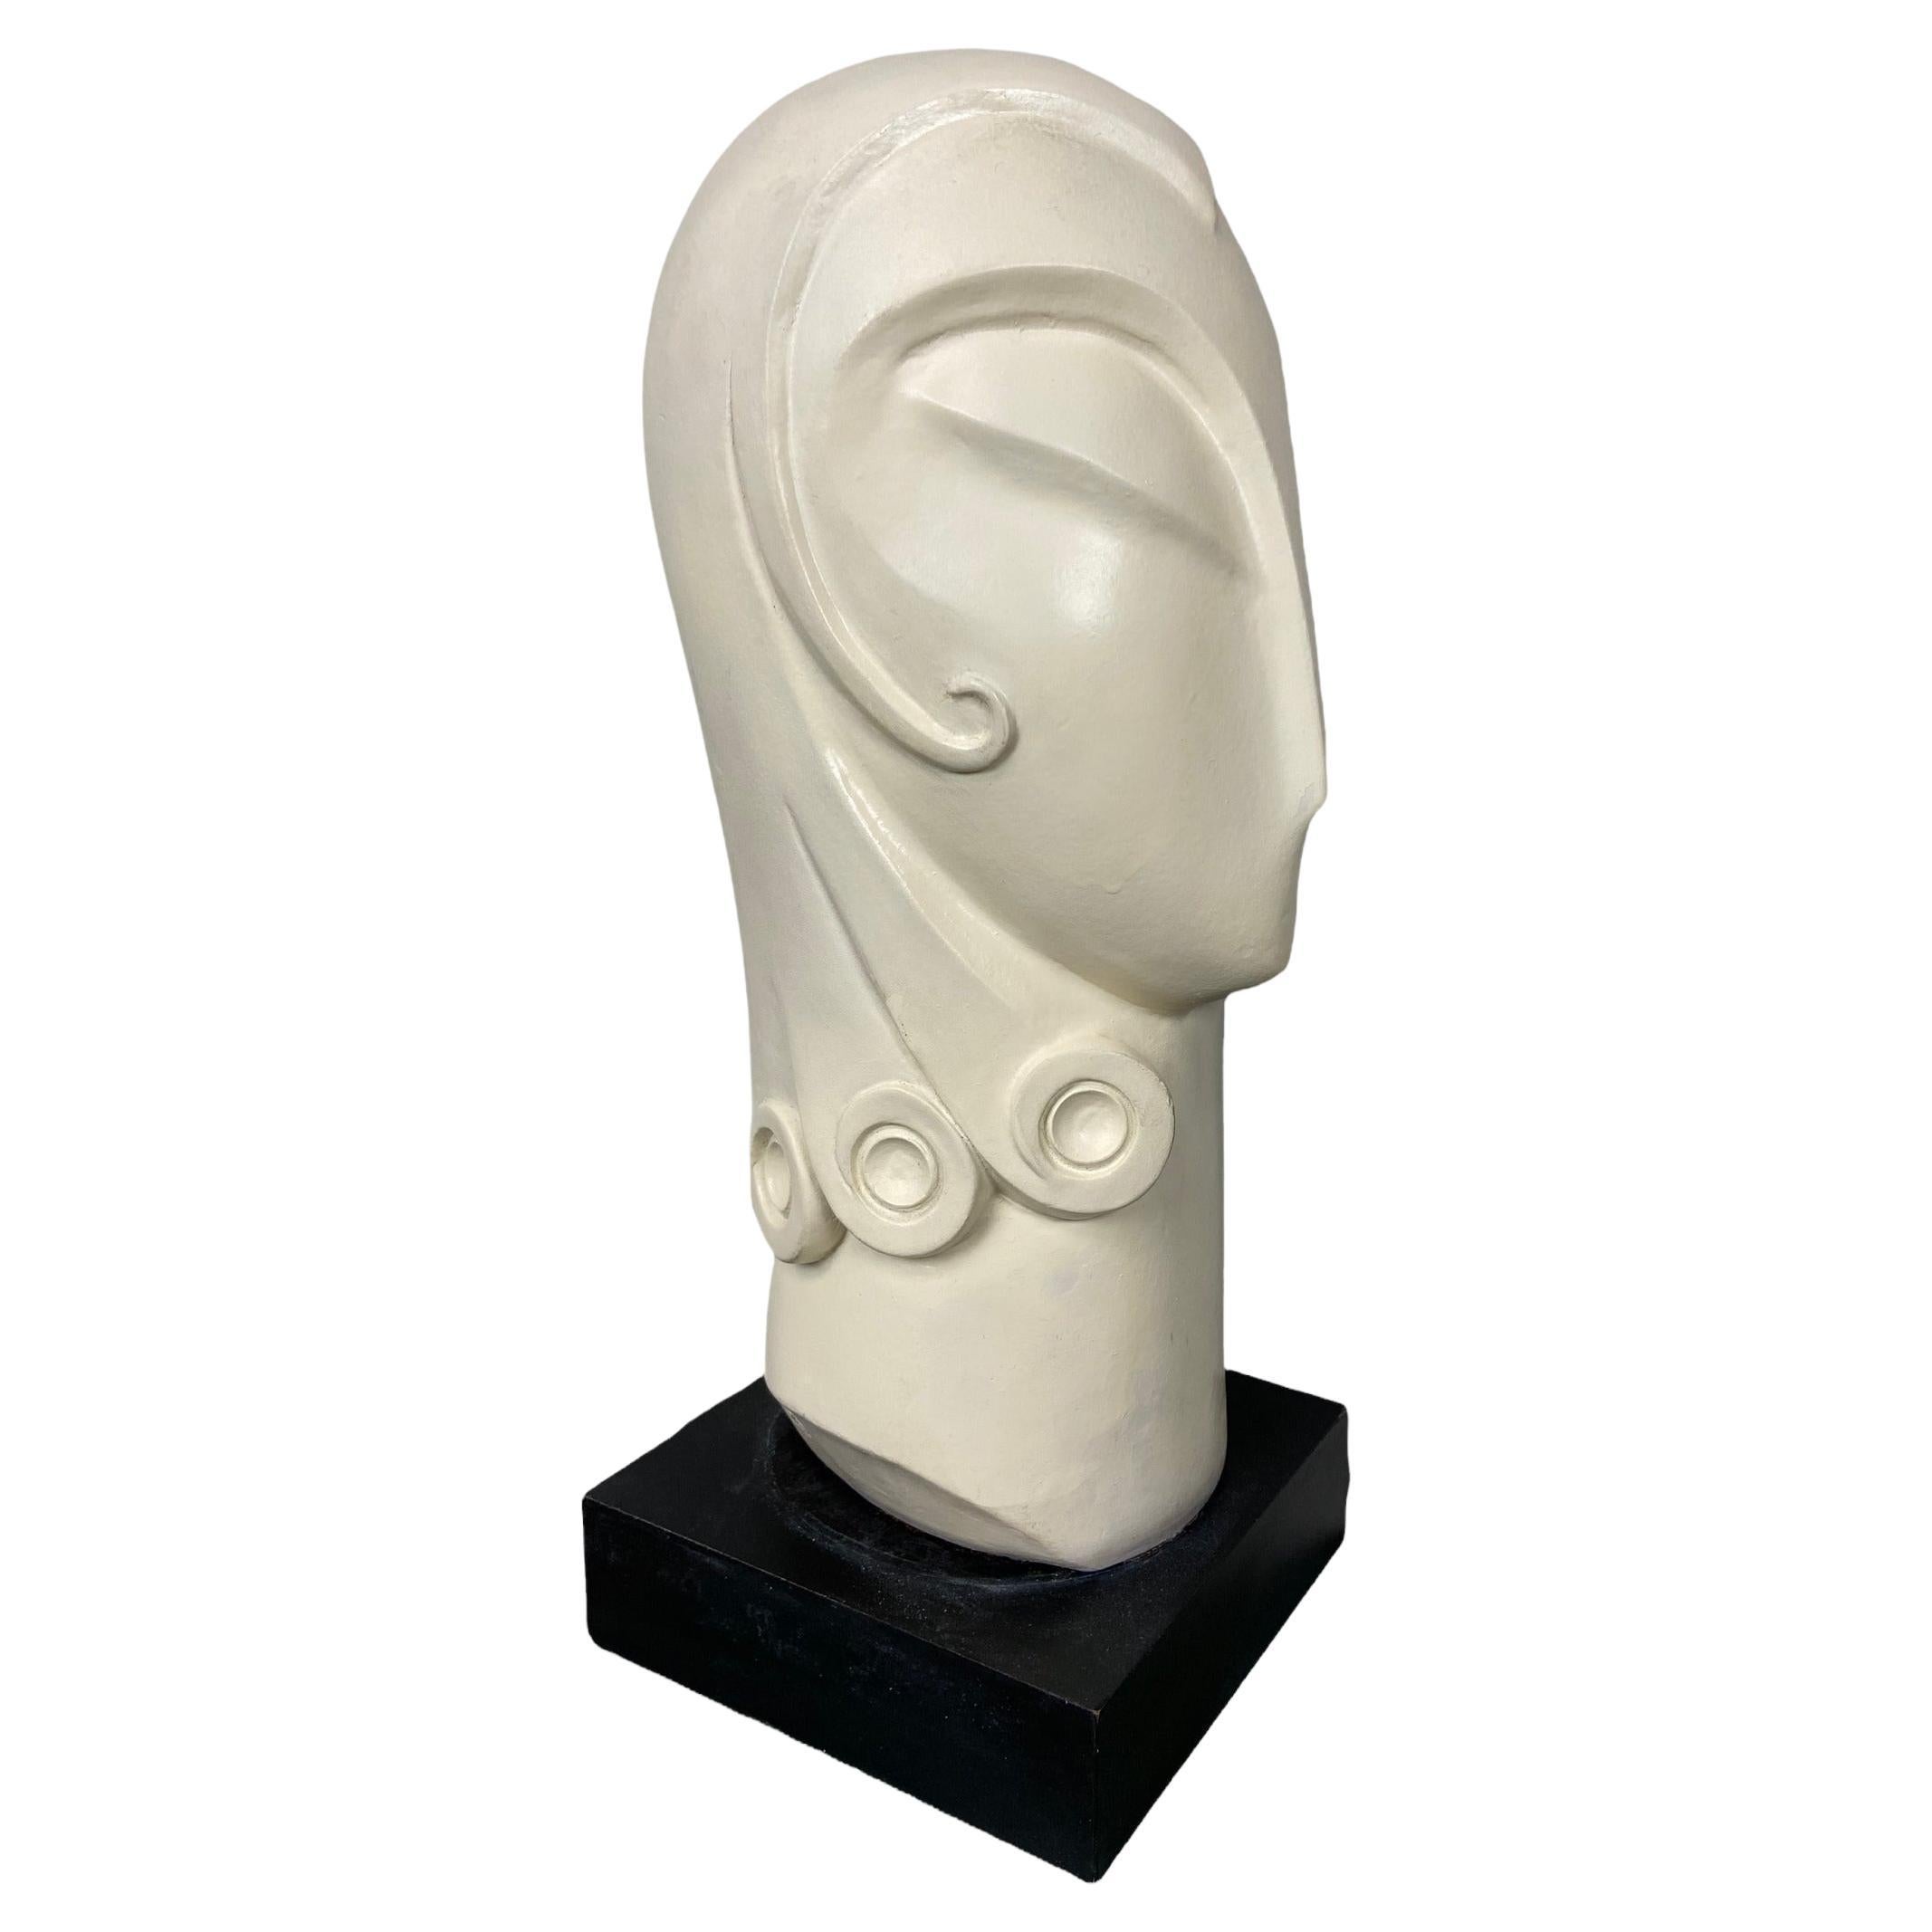 Keramische Keramikstatue von David Fisher